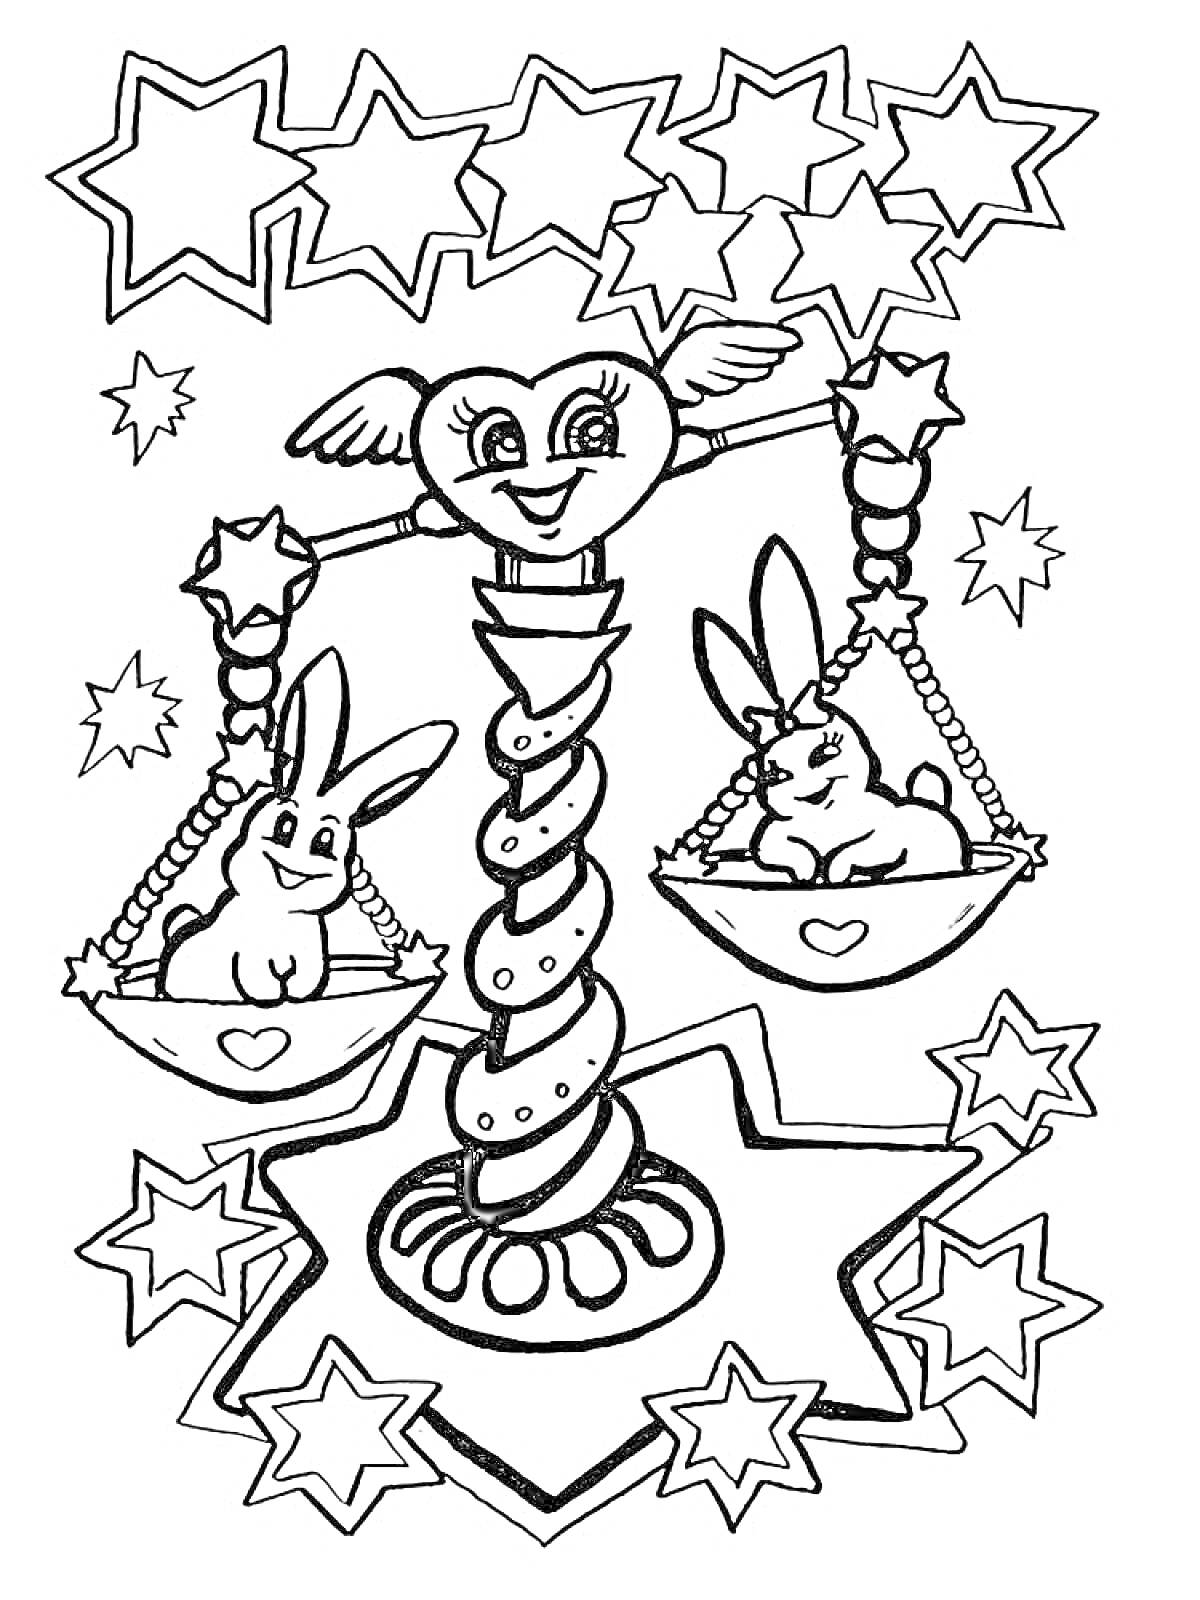 Знак зодиака Весы с кроликами на чашах весов, окруженные звездами